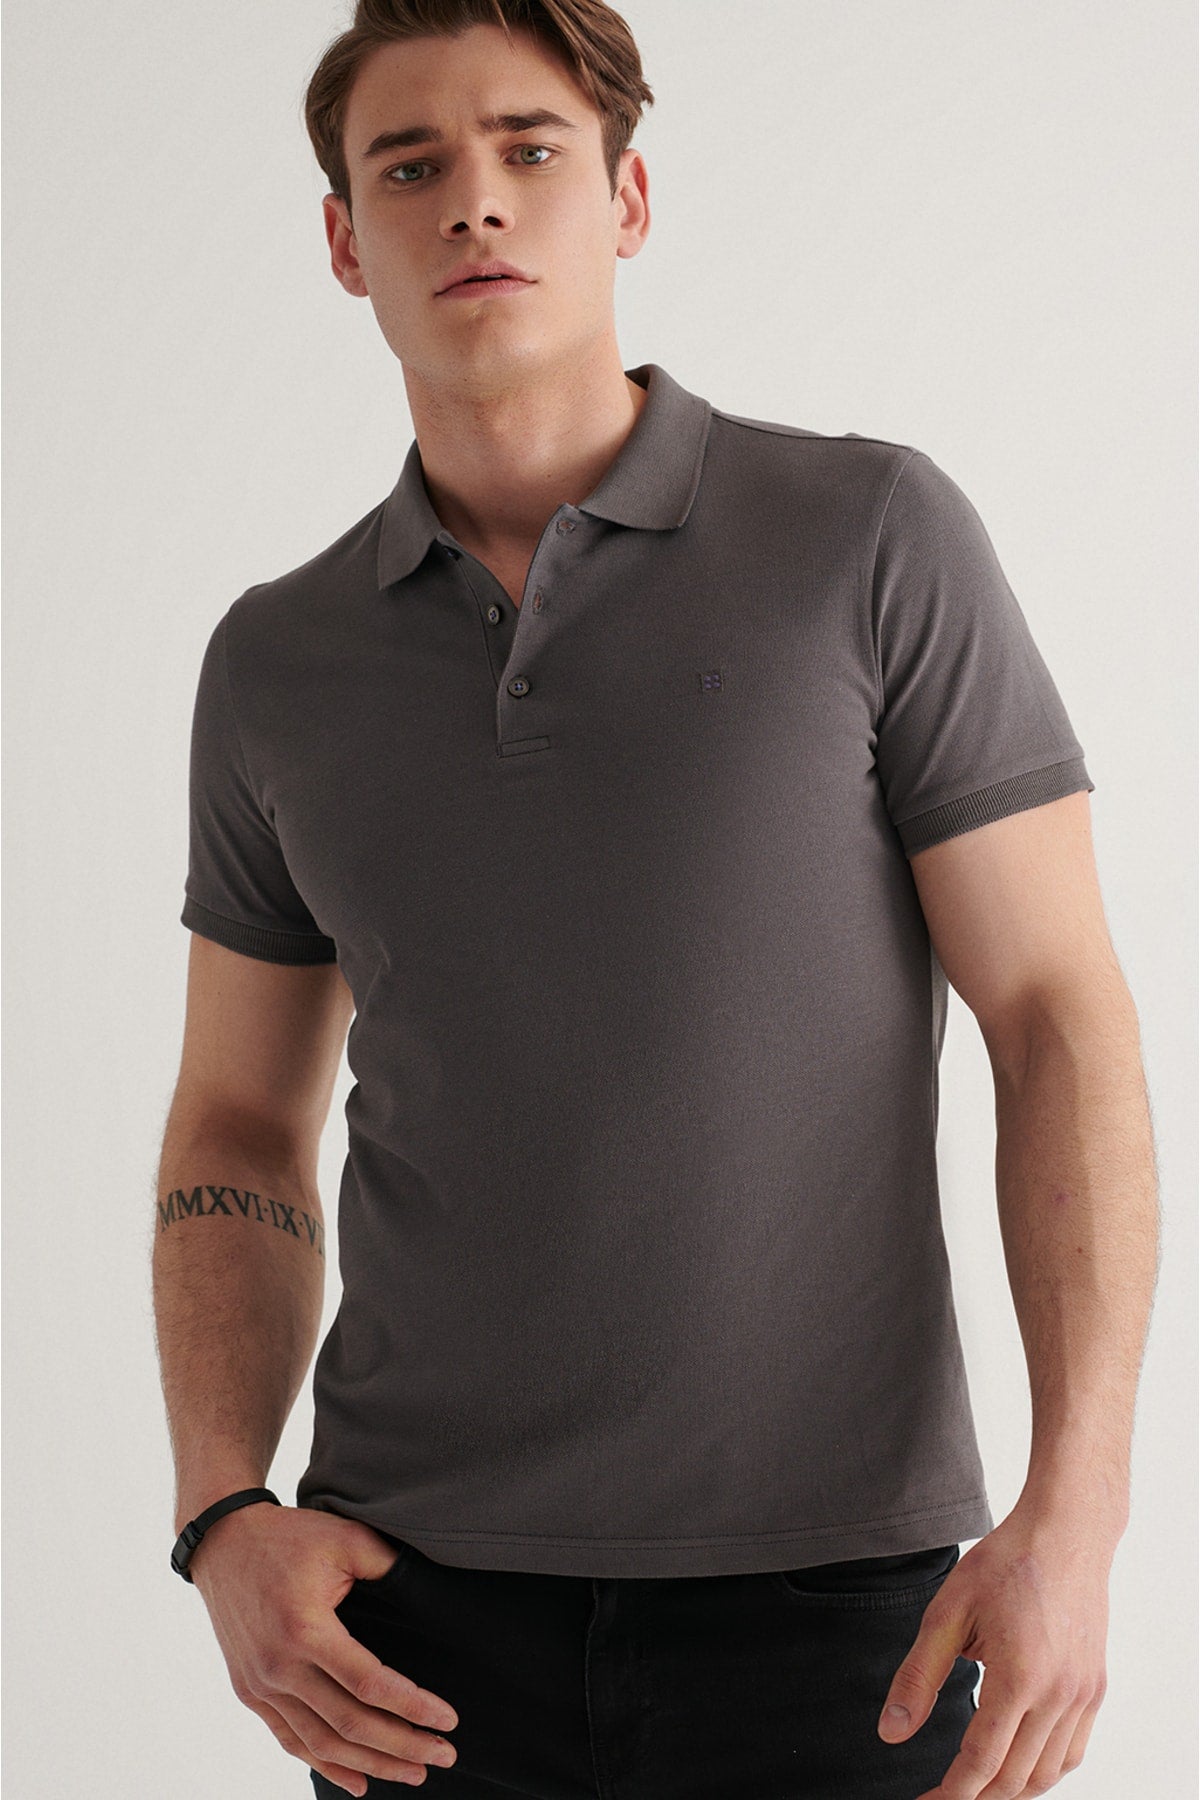  Мужская футболка антрацитового цвета из 100% дышащего хлопка стандартного кроя с воротником поло нормального покроя E001004